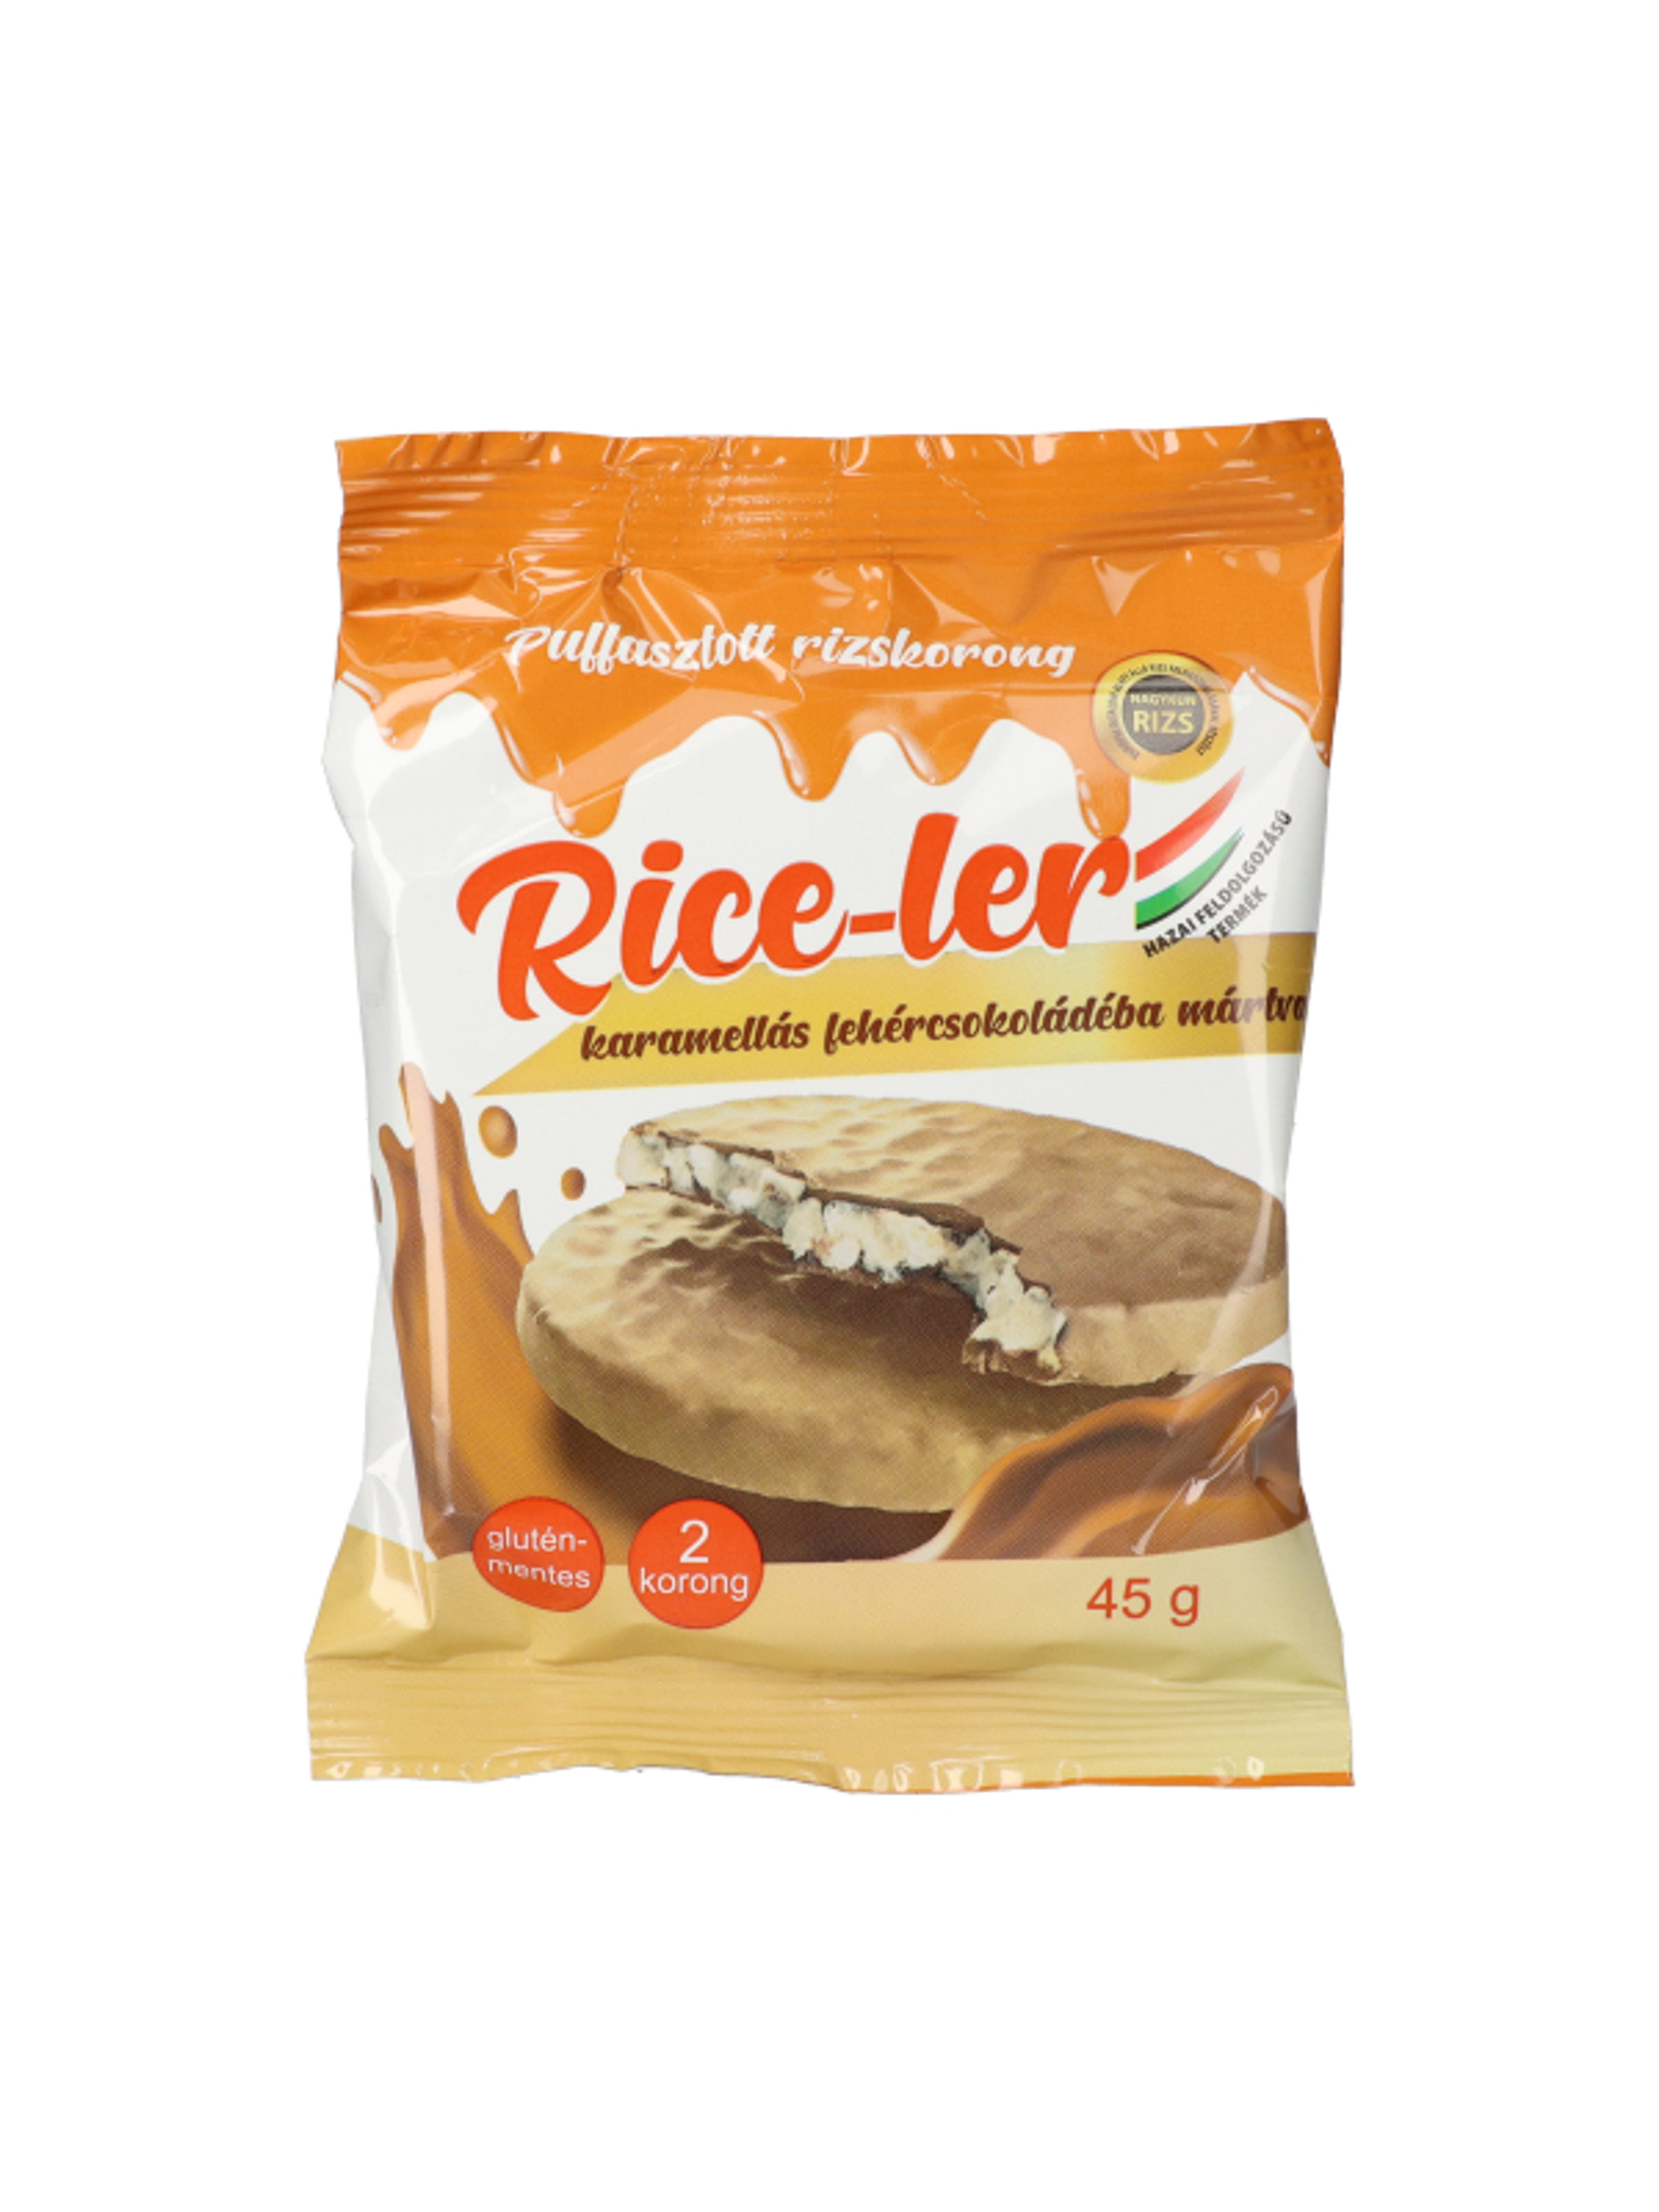 Rice-ler puffasztott rizskorong karamellás fehércsokival - 45 g